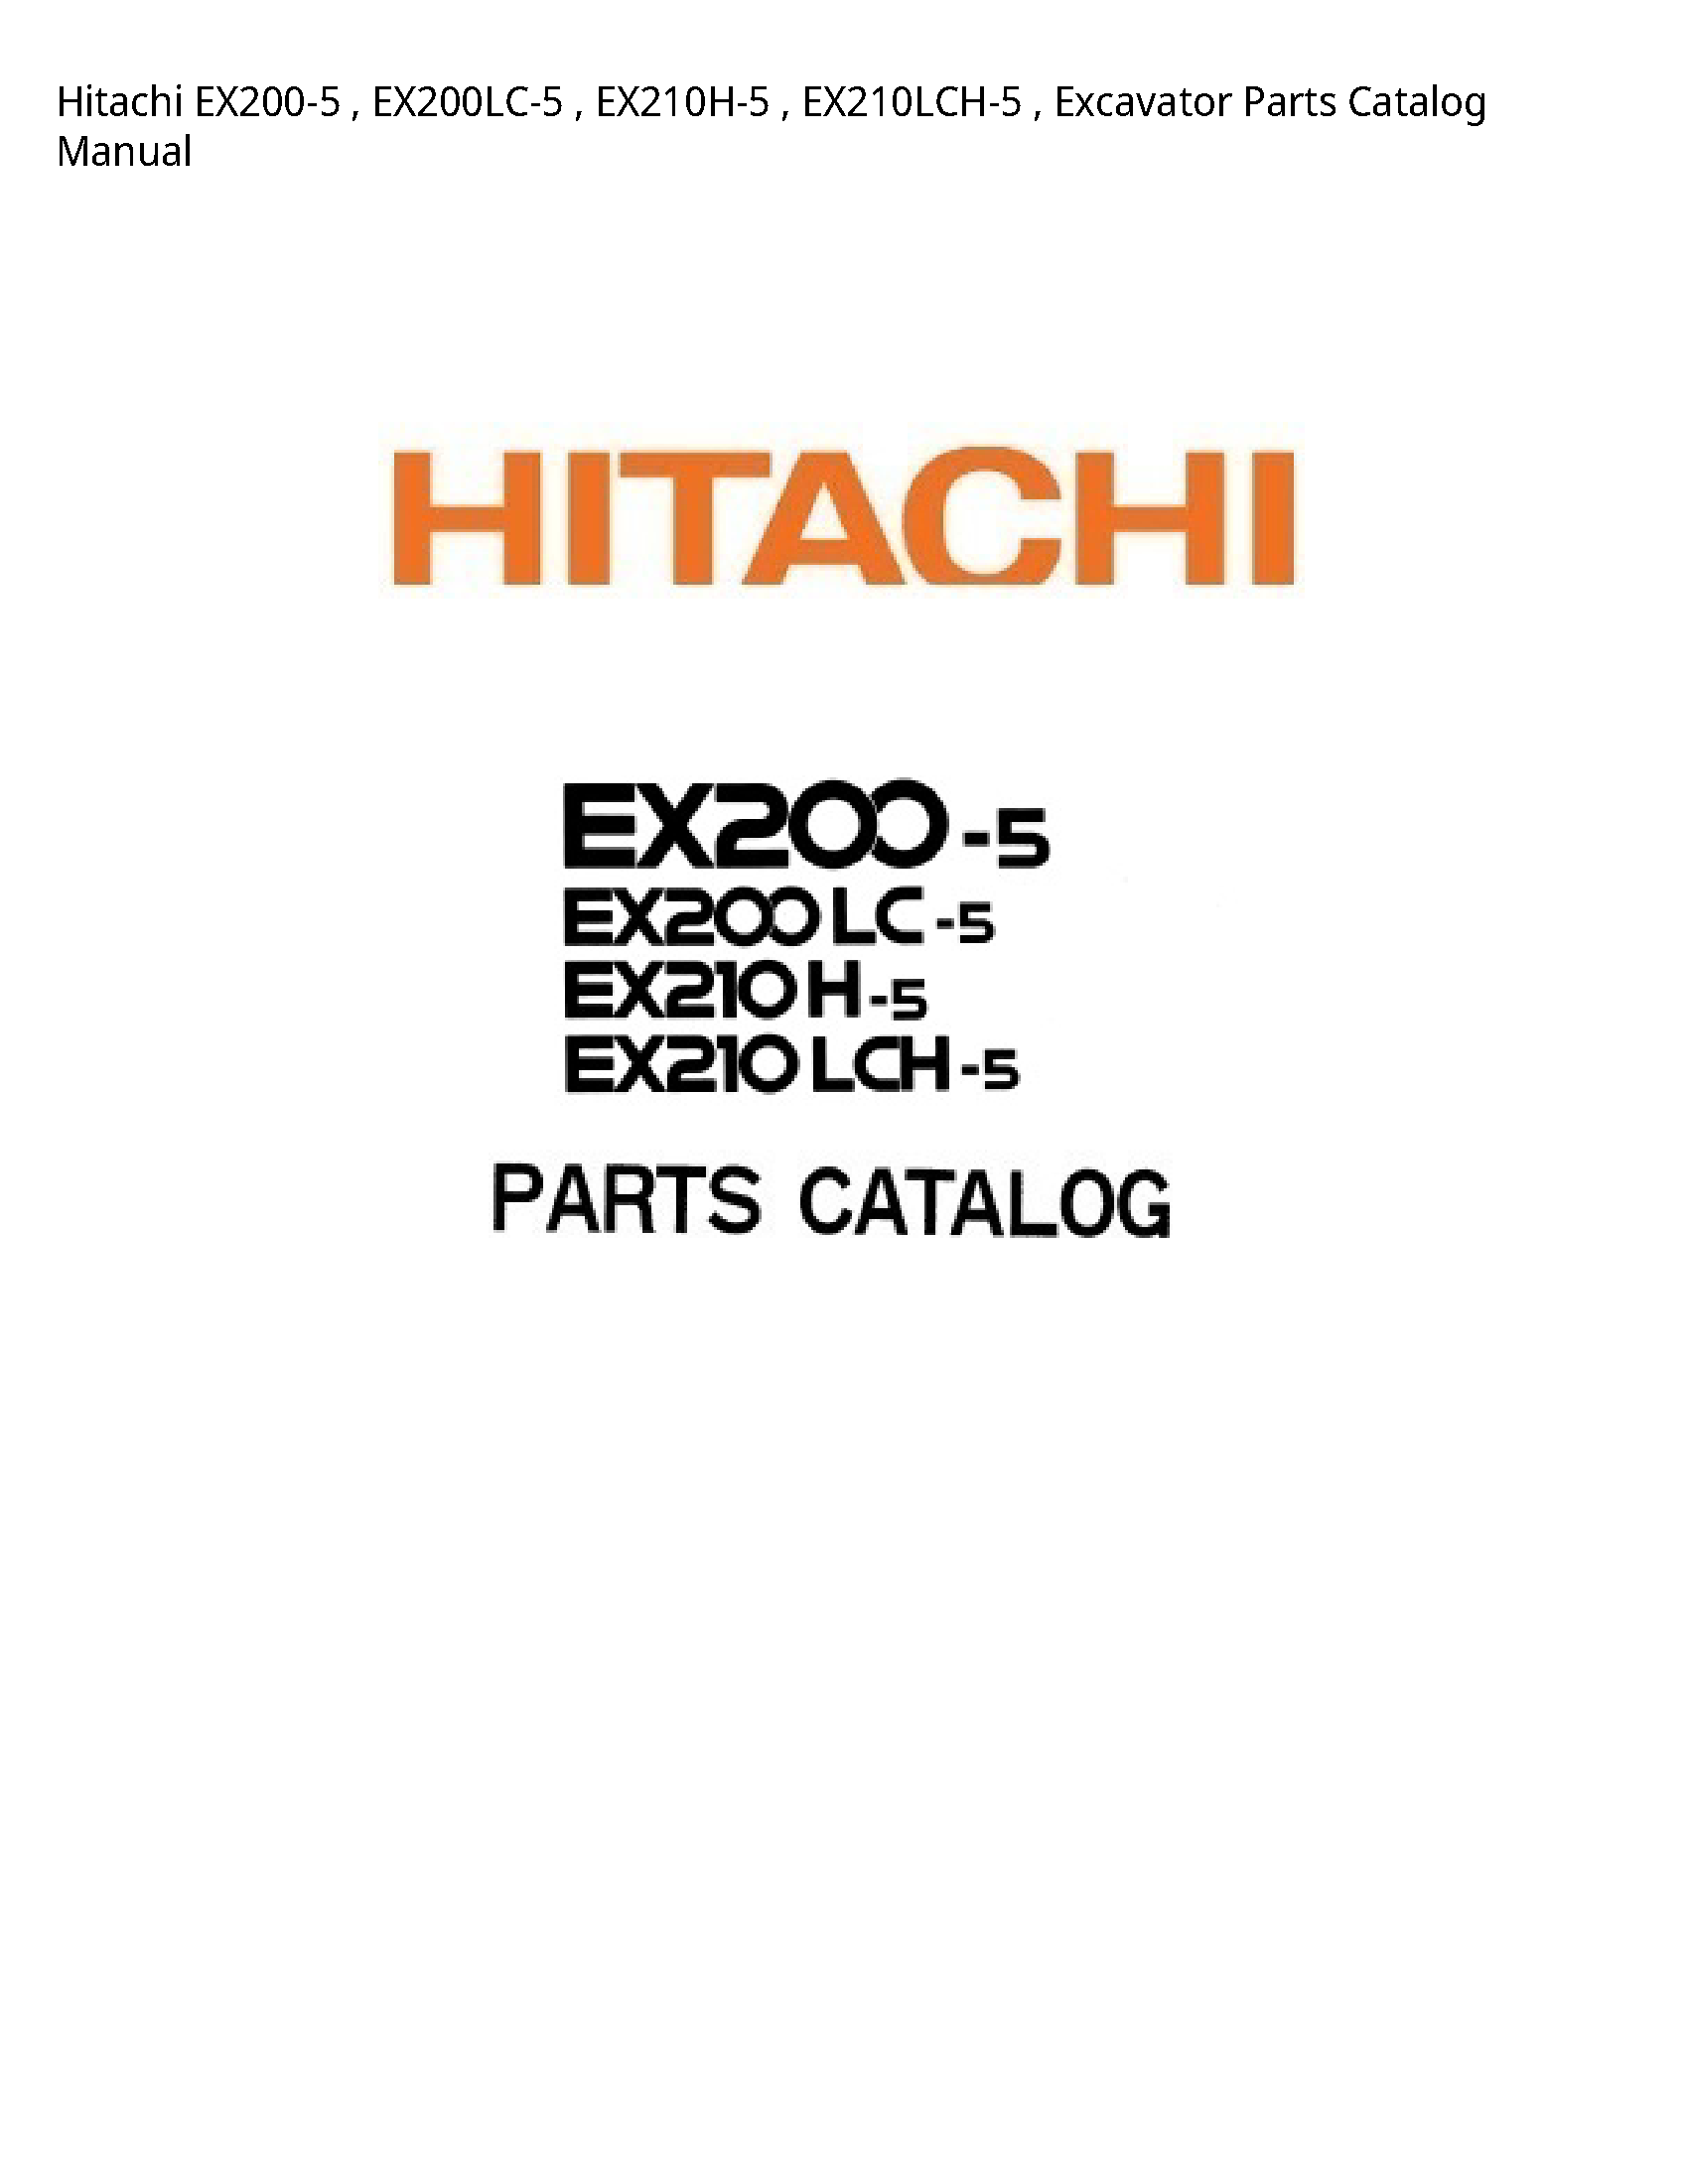 Hitachi EX200-5 Excavator Parts Catalog manual